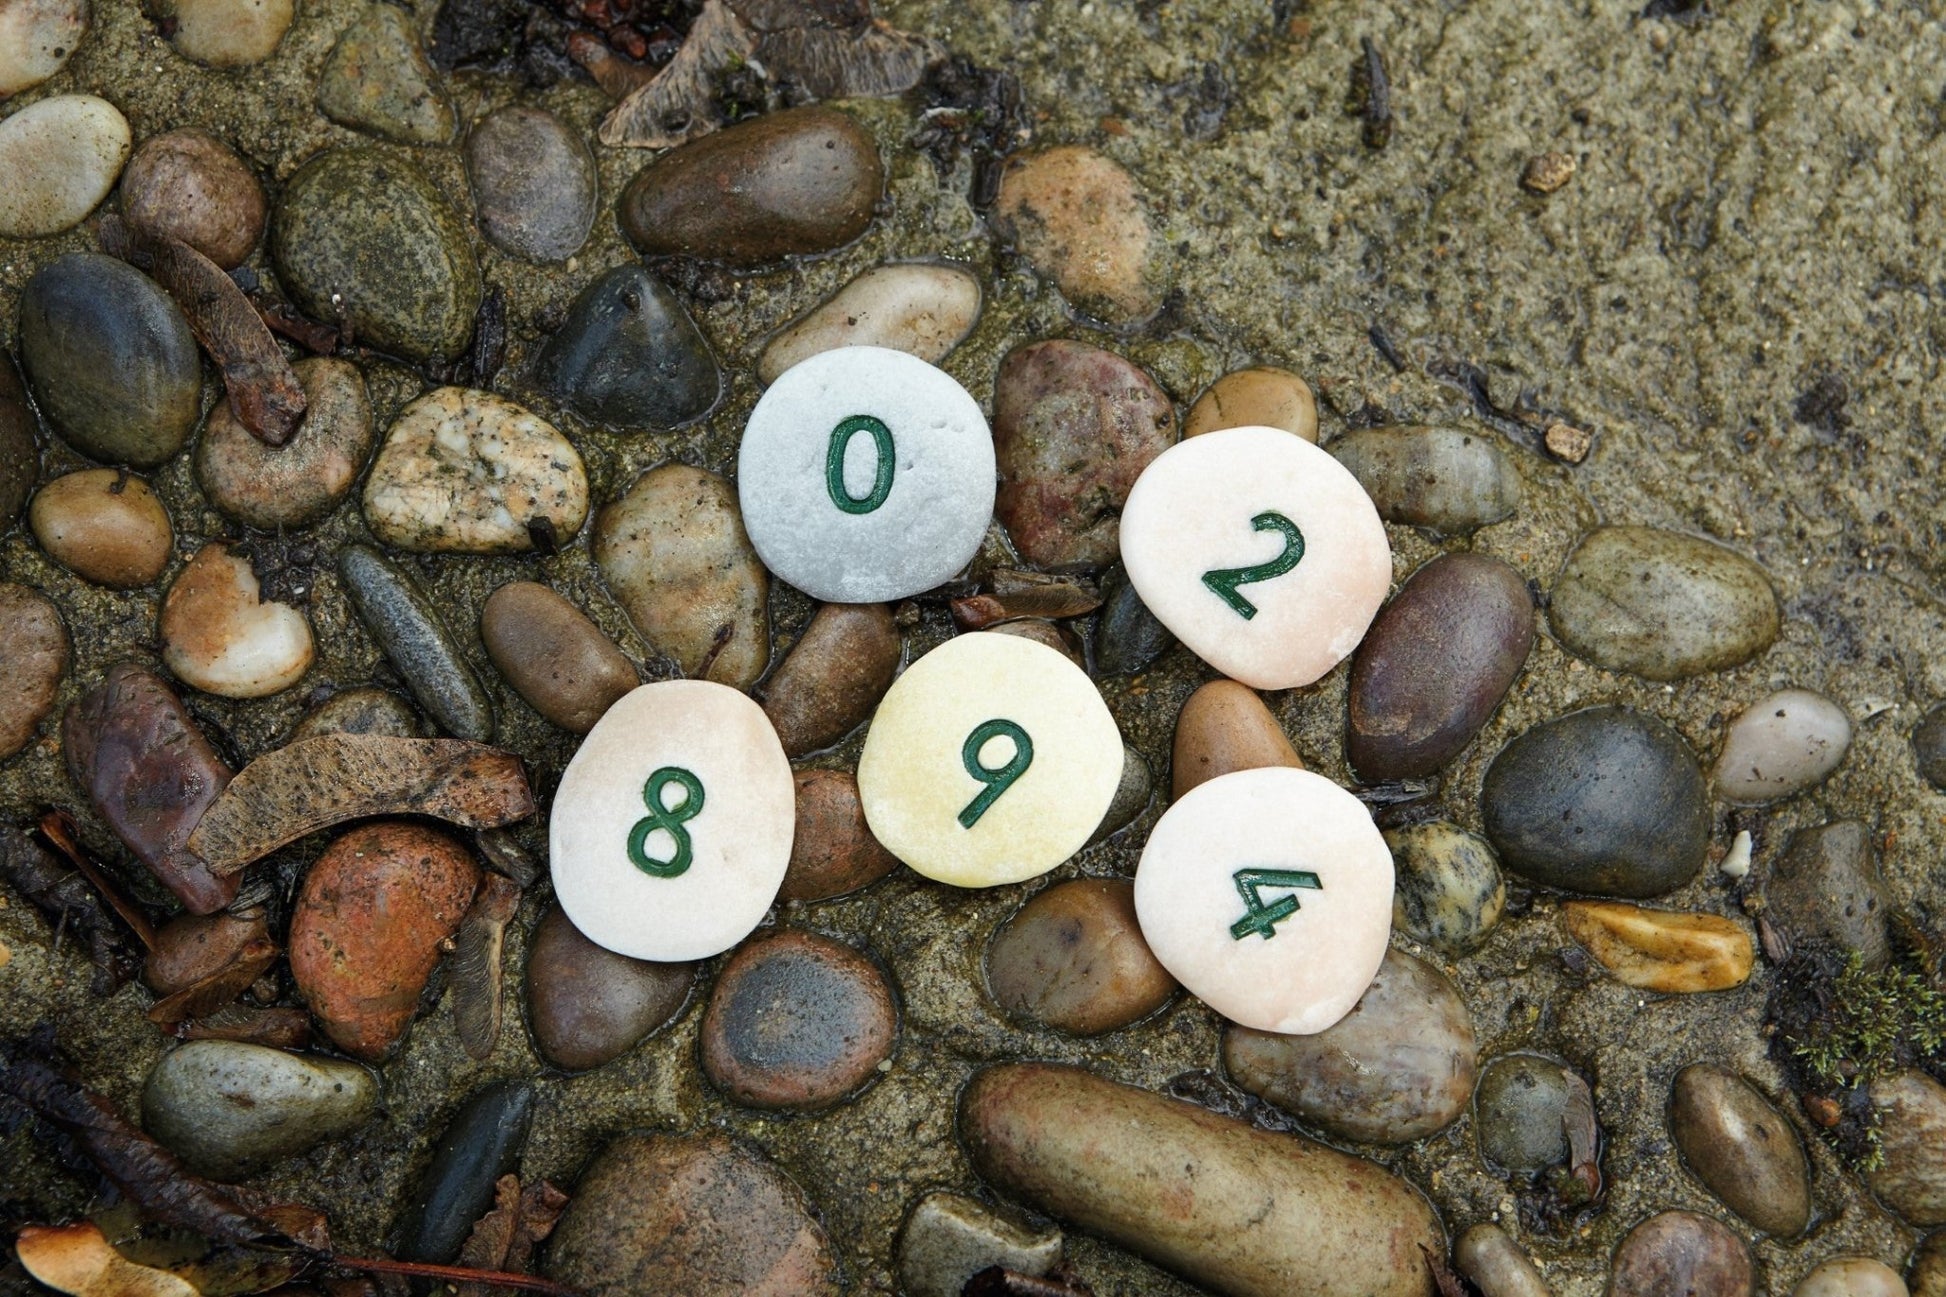 Yellow Door - Number Pebbles - Number Bonds to 10 - Playlaan